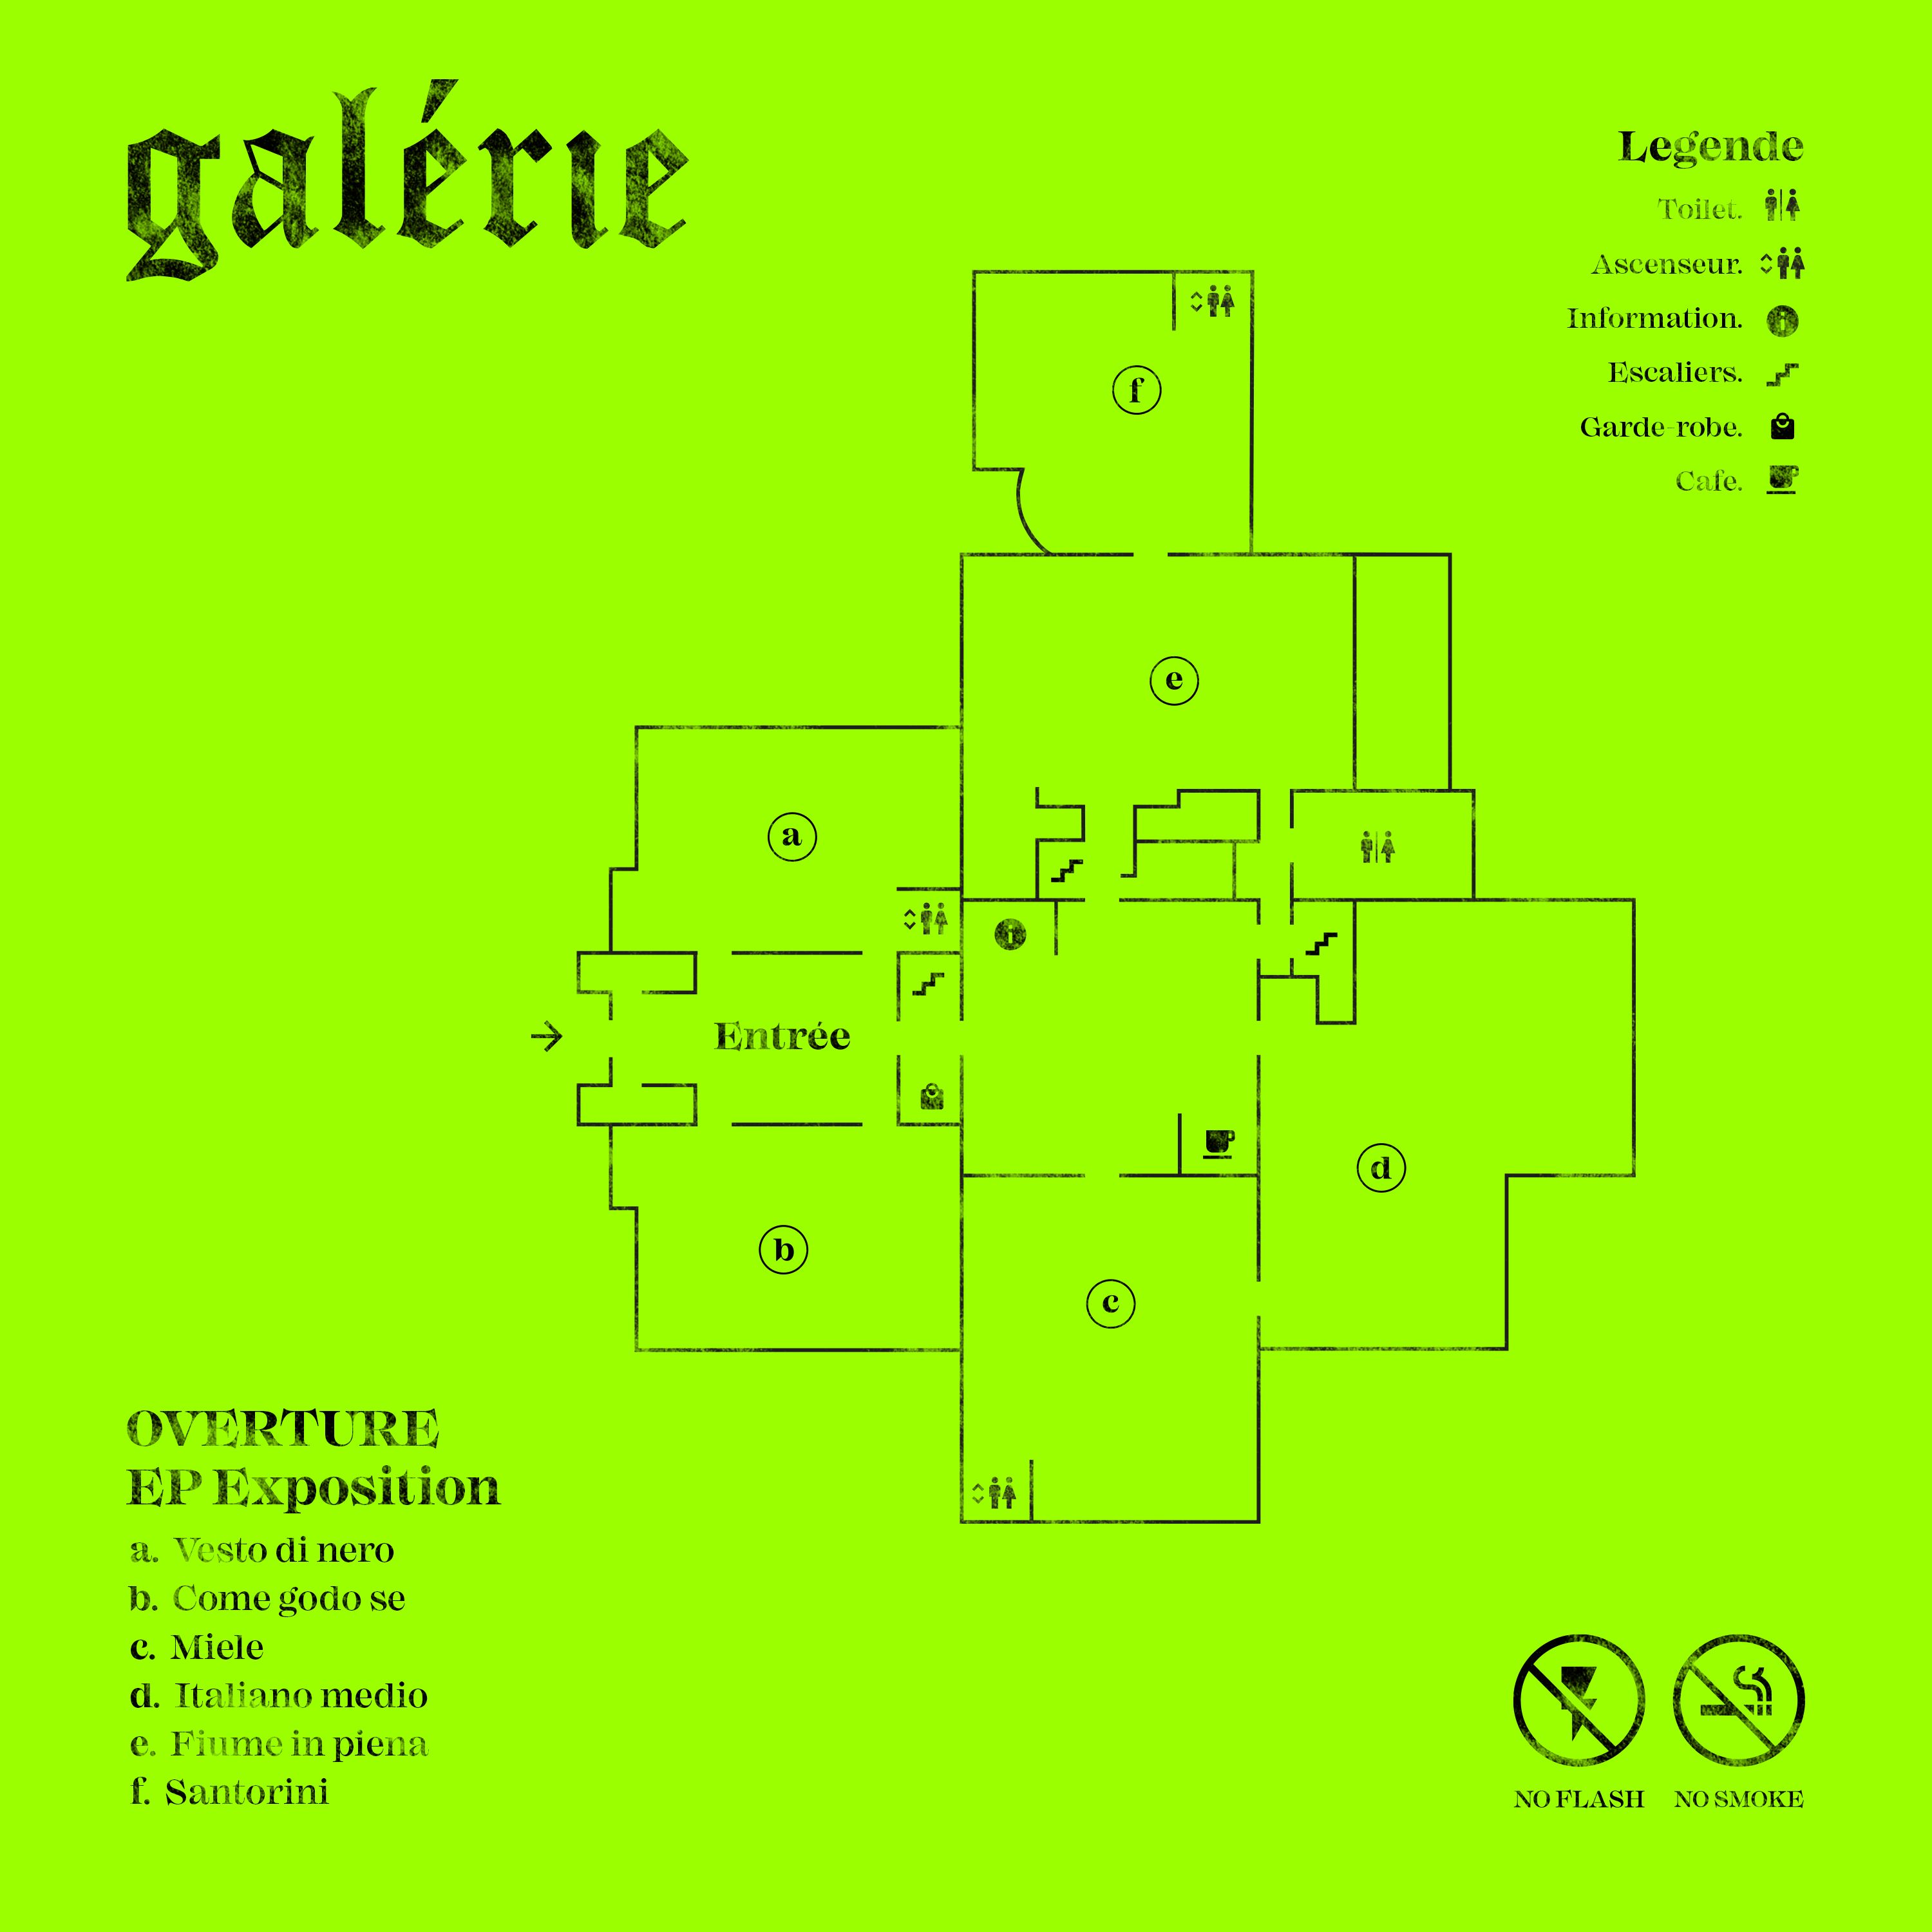 Galérie, è uscito l'album di debutto degli Overture